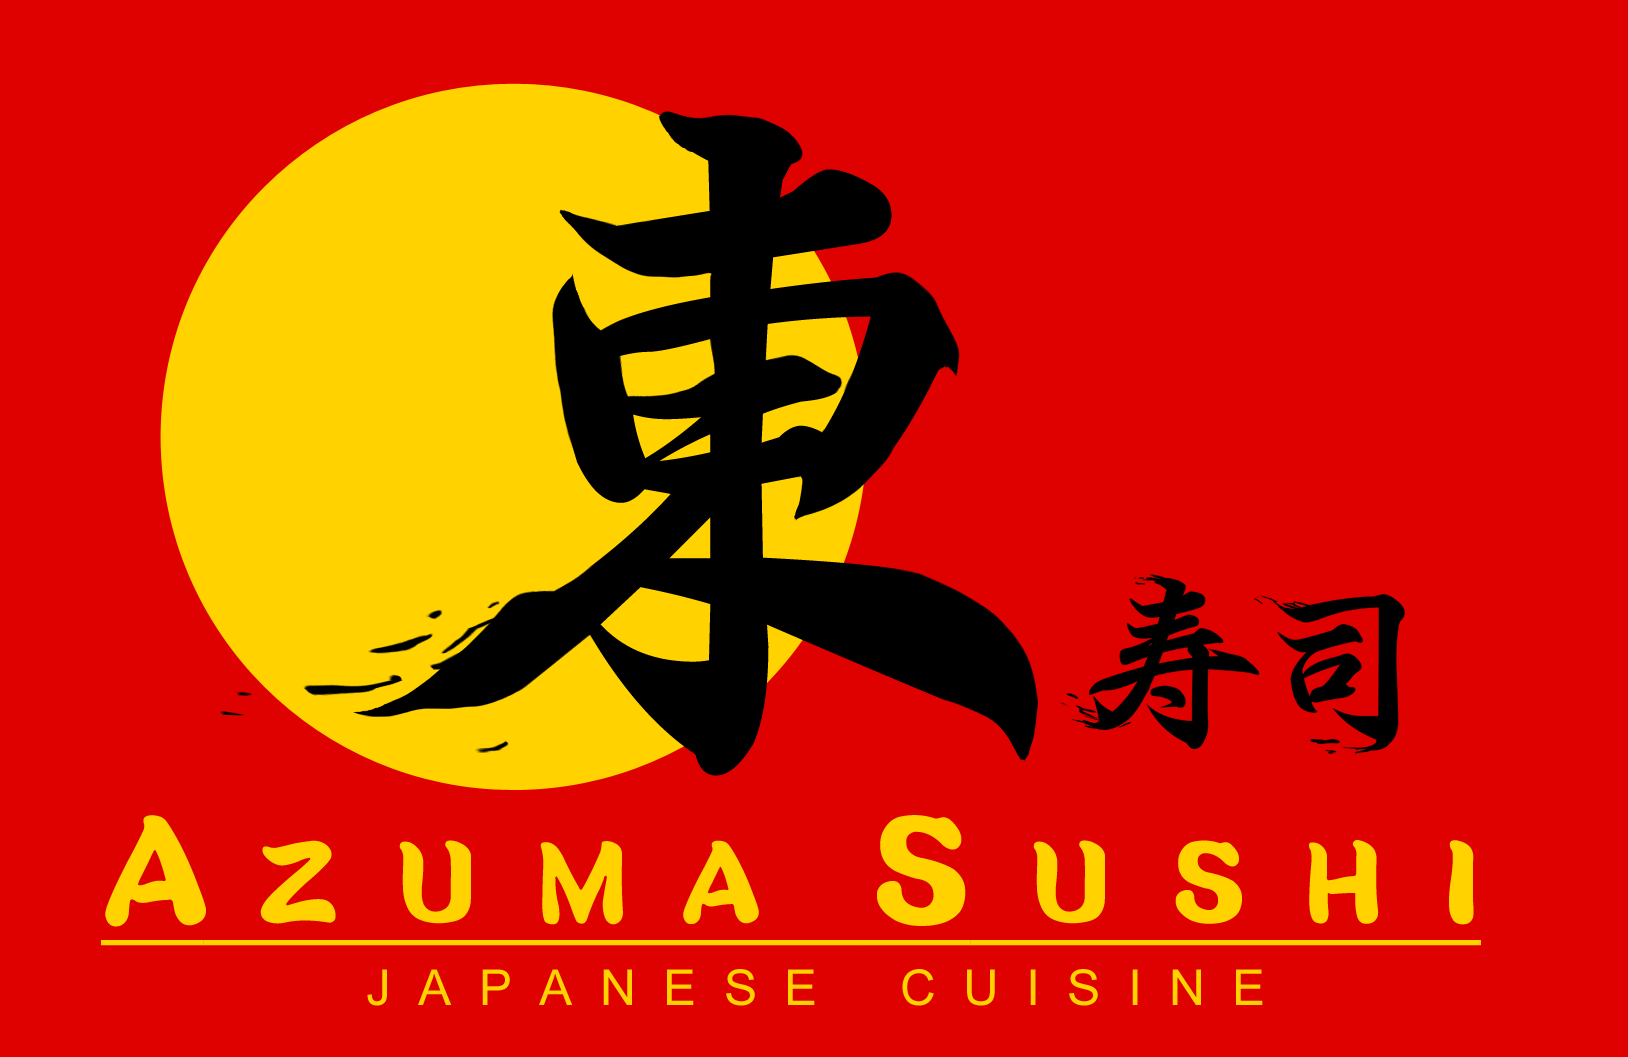 Azuma Japanese Restaurant - Japanese Restaurant